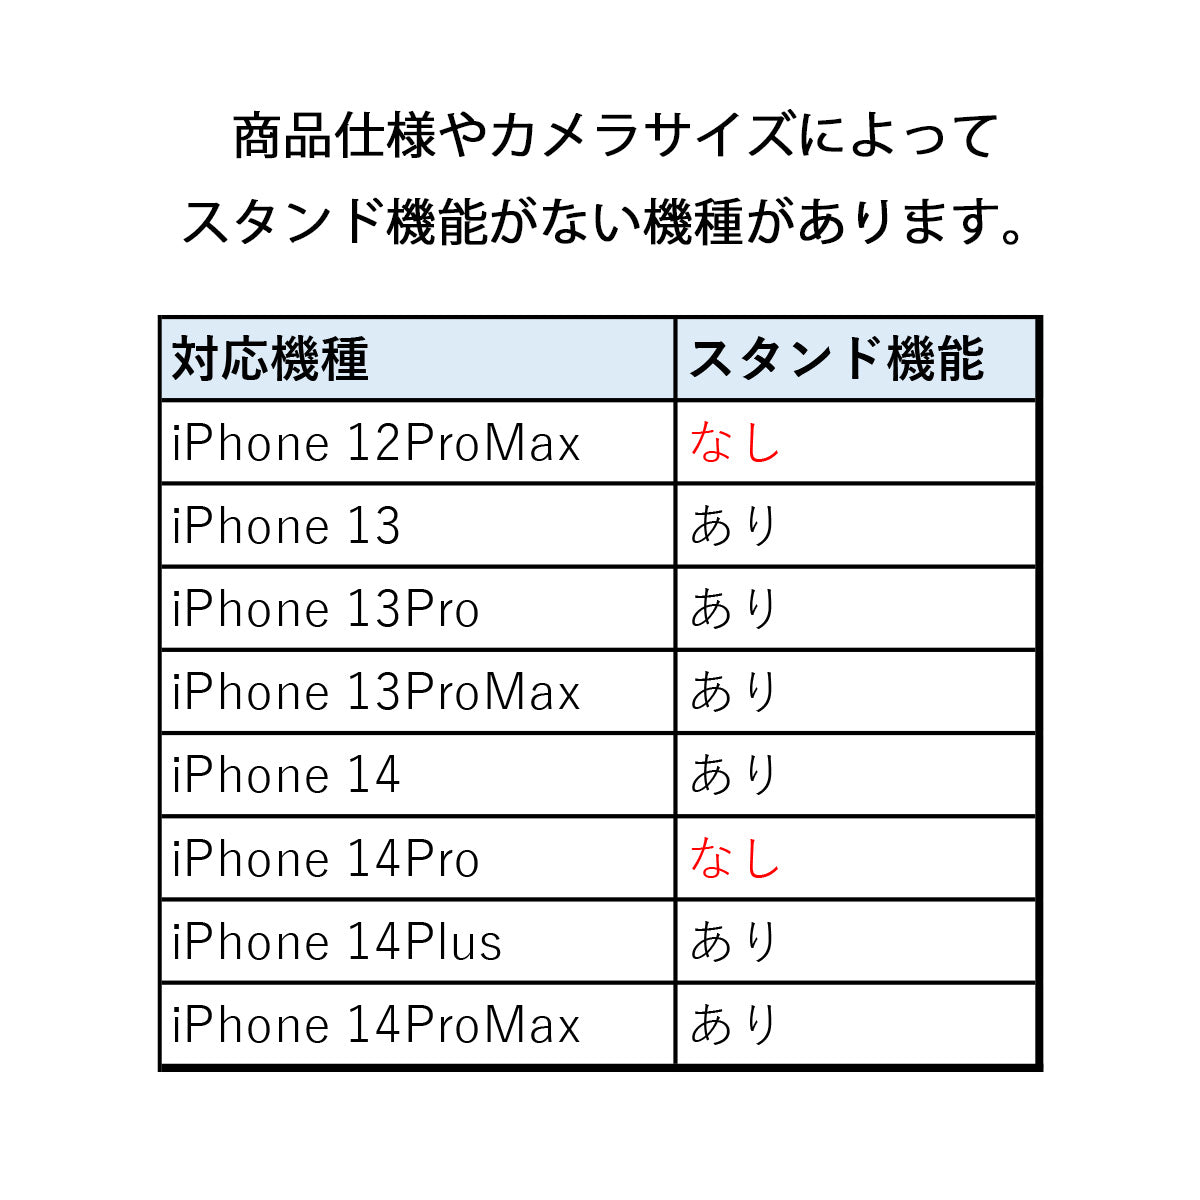 MagSafe対応 手帳型 iPhone13 iPhone13ケース 高級レザー カード収納 マグネット開閉 マグセーフ 対応 iPhone12ケース 13Pro 13ProMax 6.1 6.7 インチ スマートフォン周辺機器 iPhone